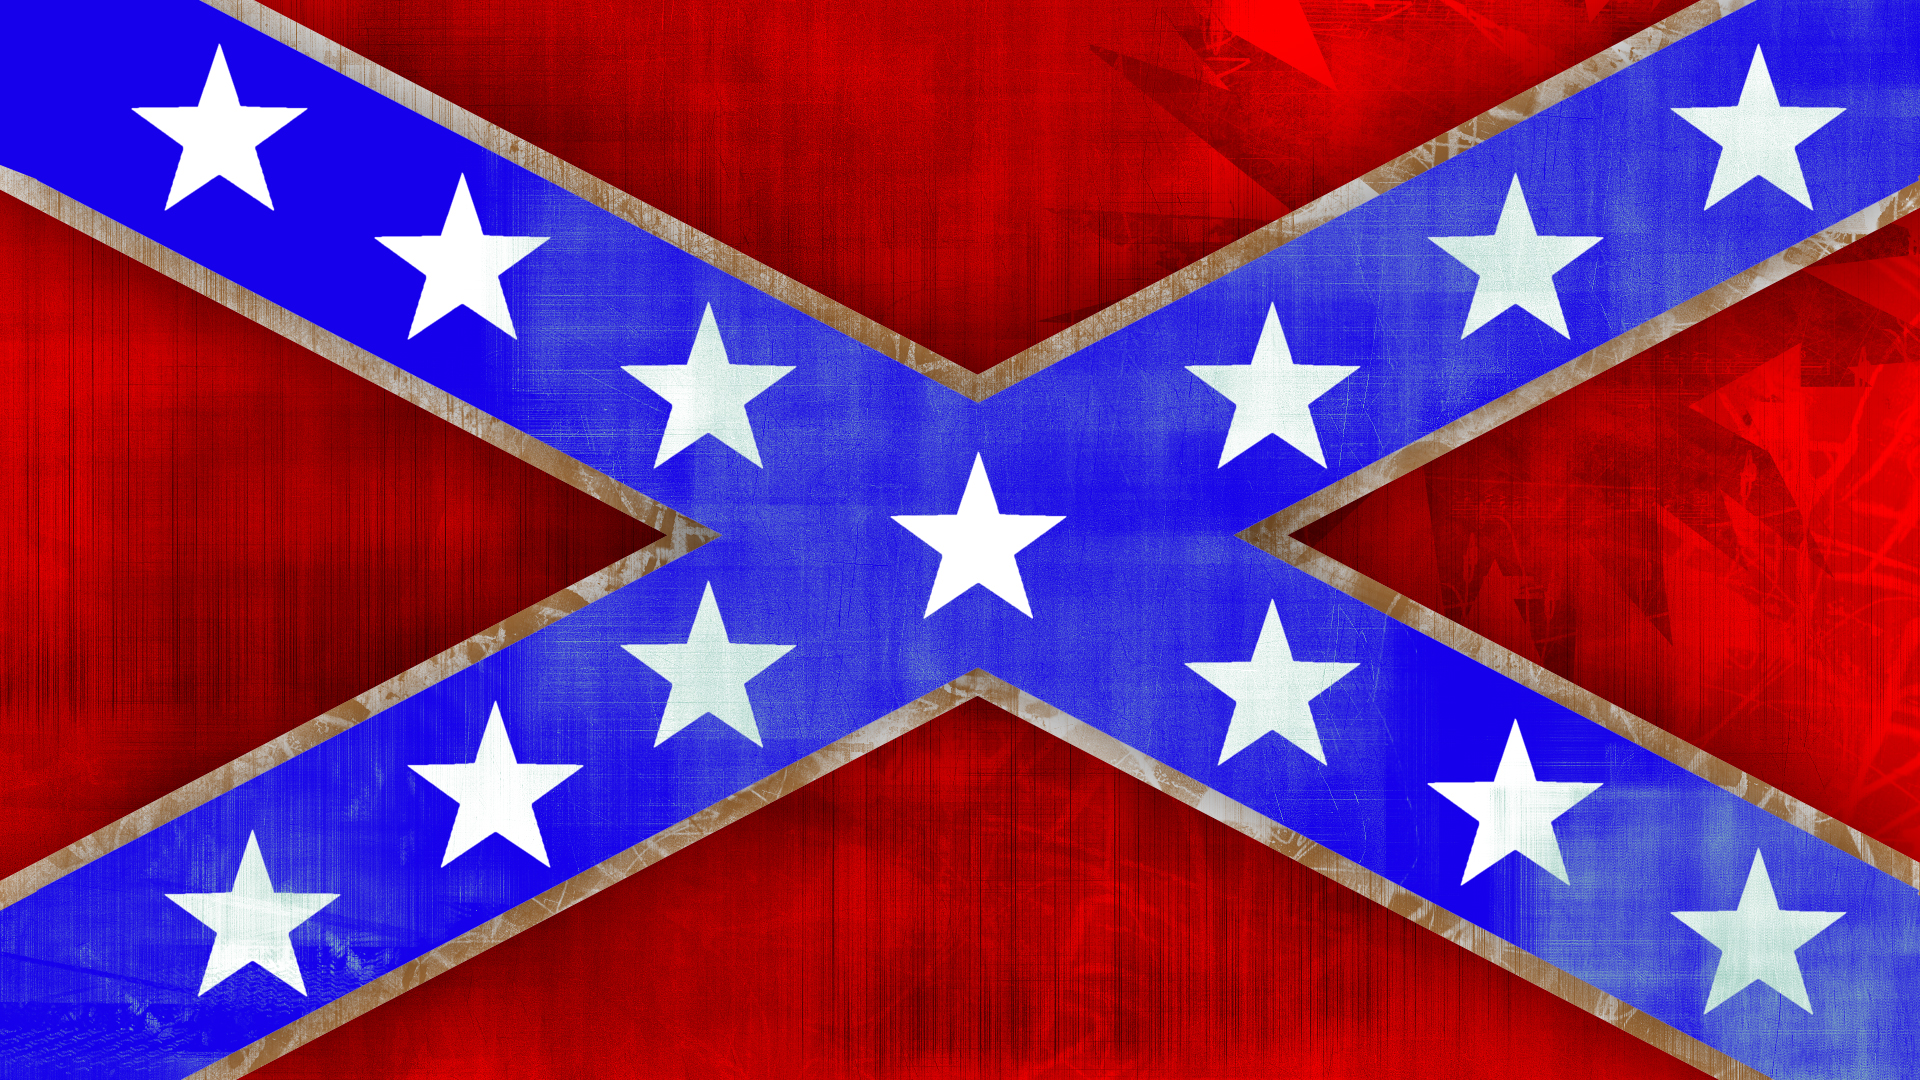 Redneck Flag Wallpaper Cool confedera